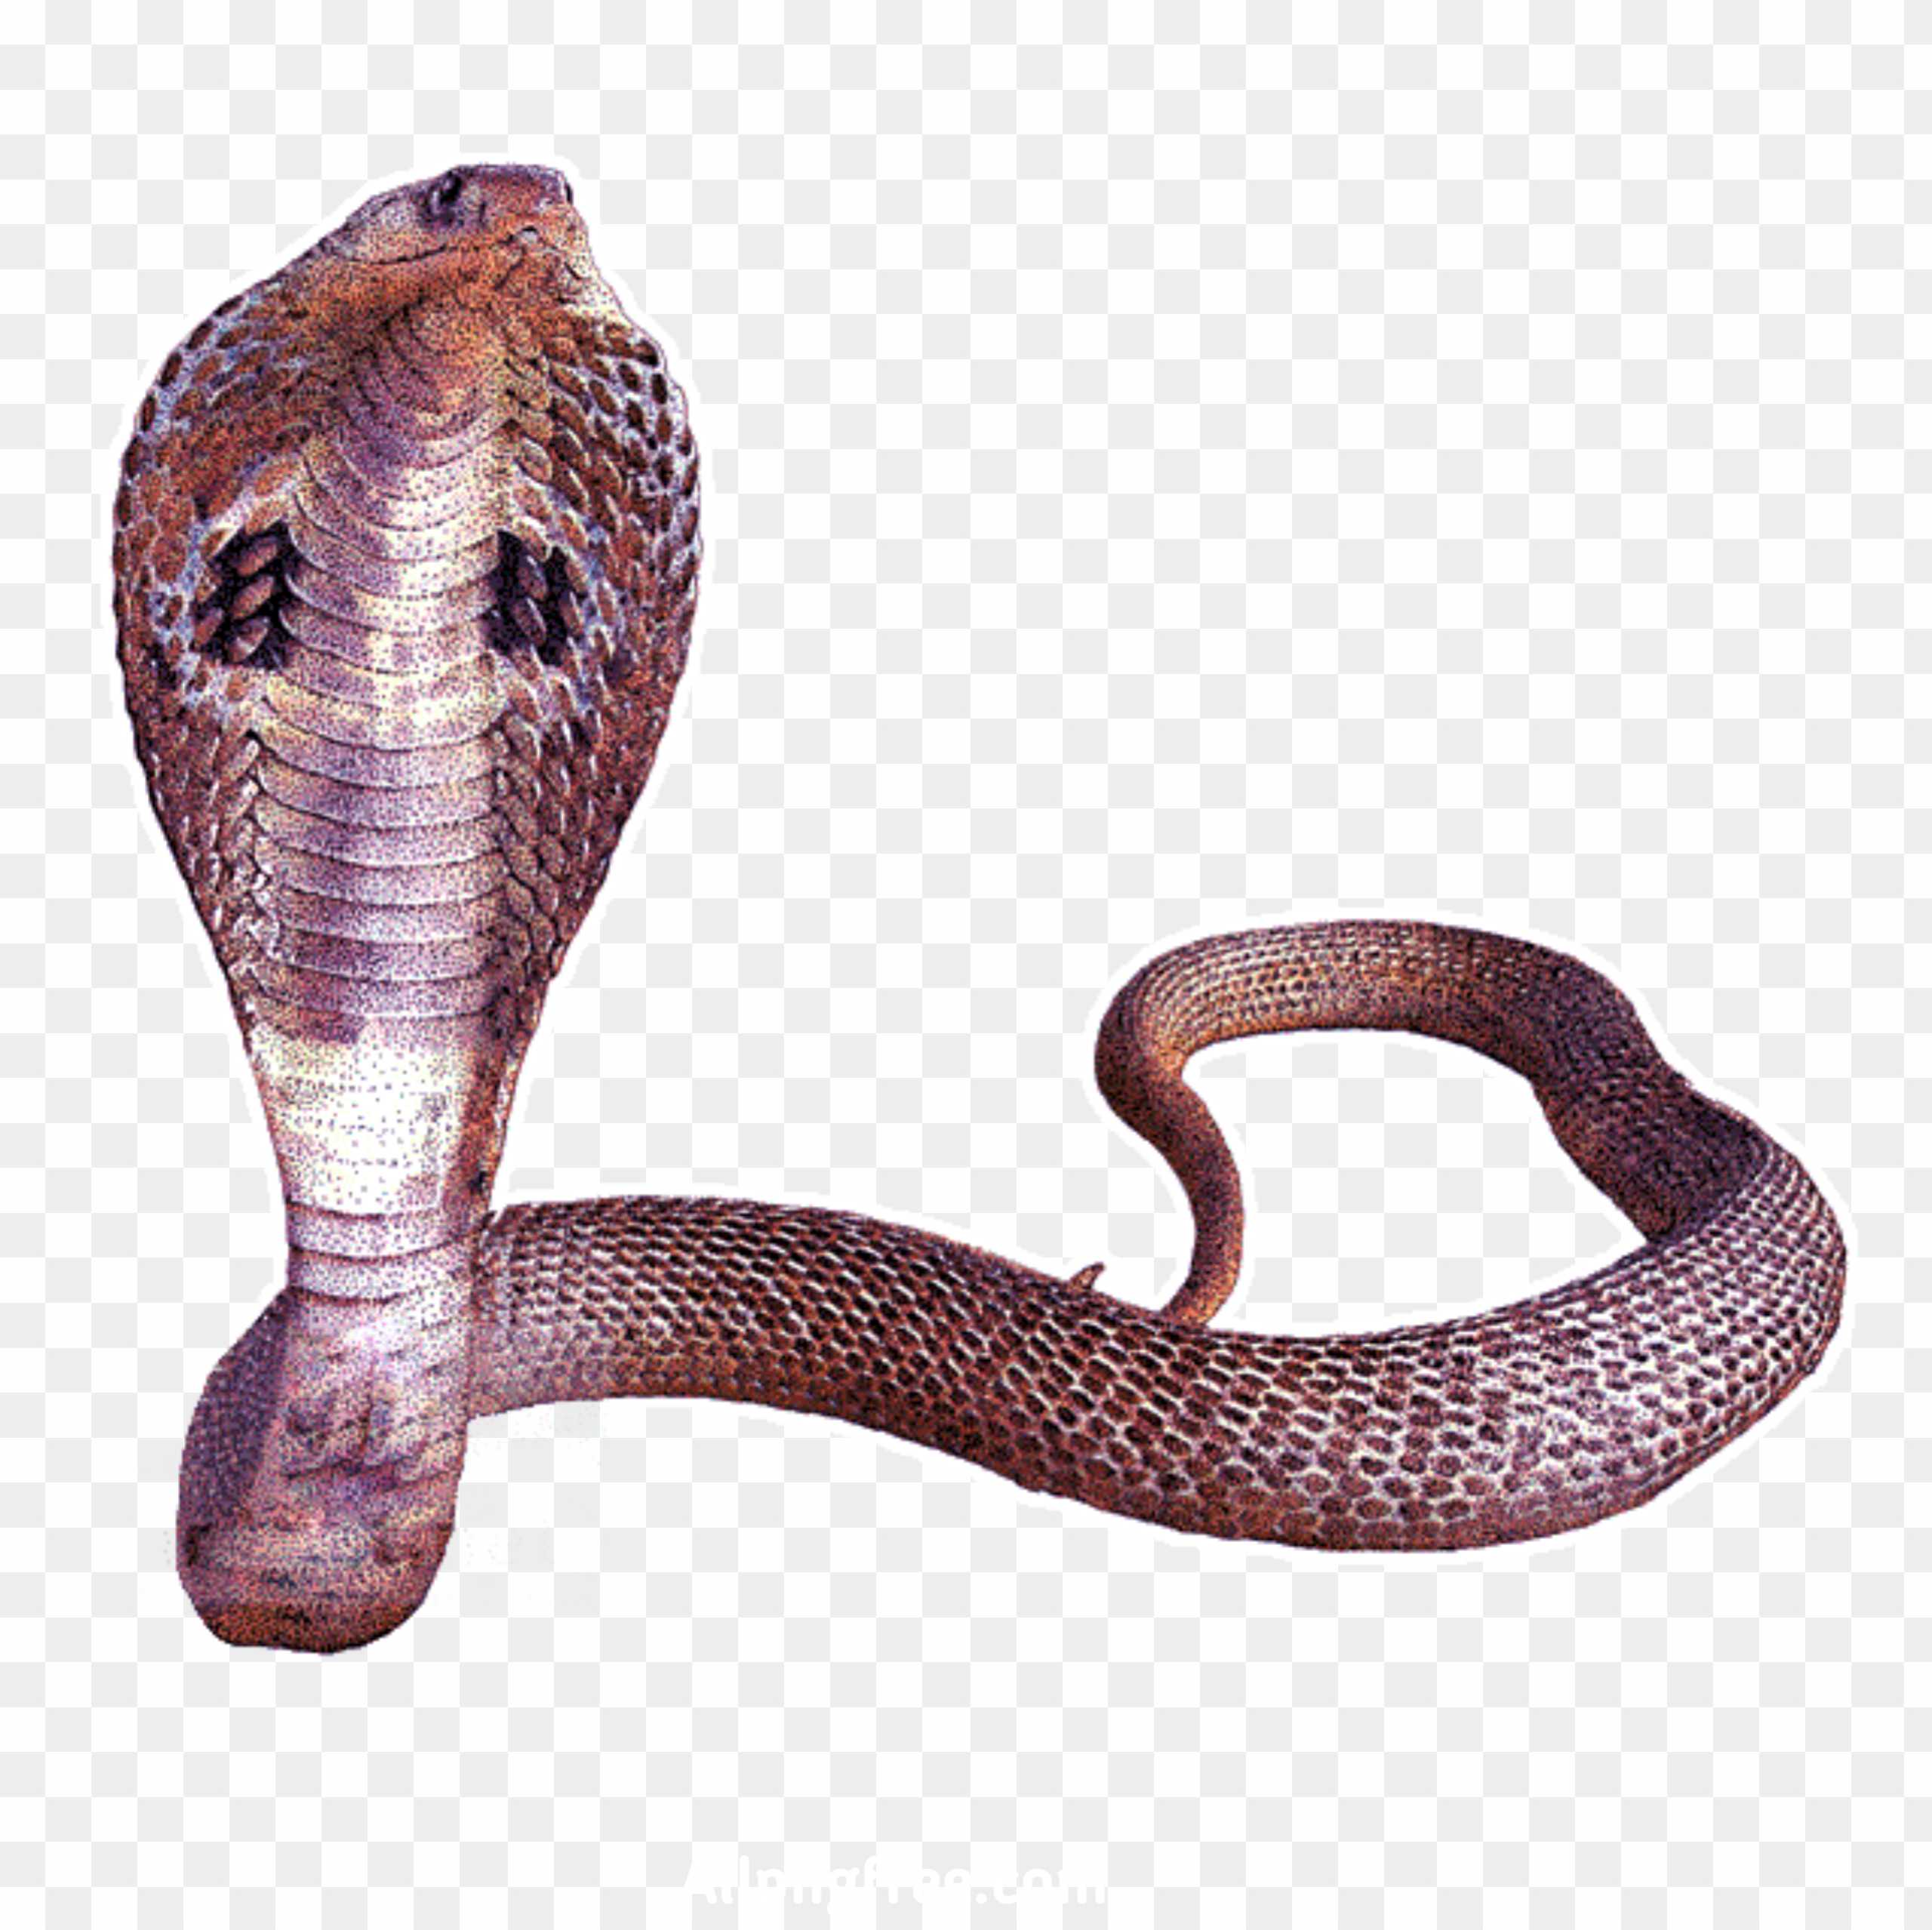 Cobra Snake PNG Transparent Image download